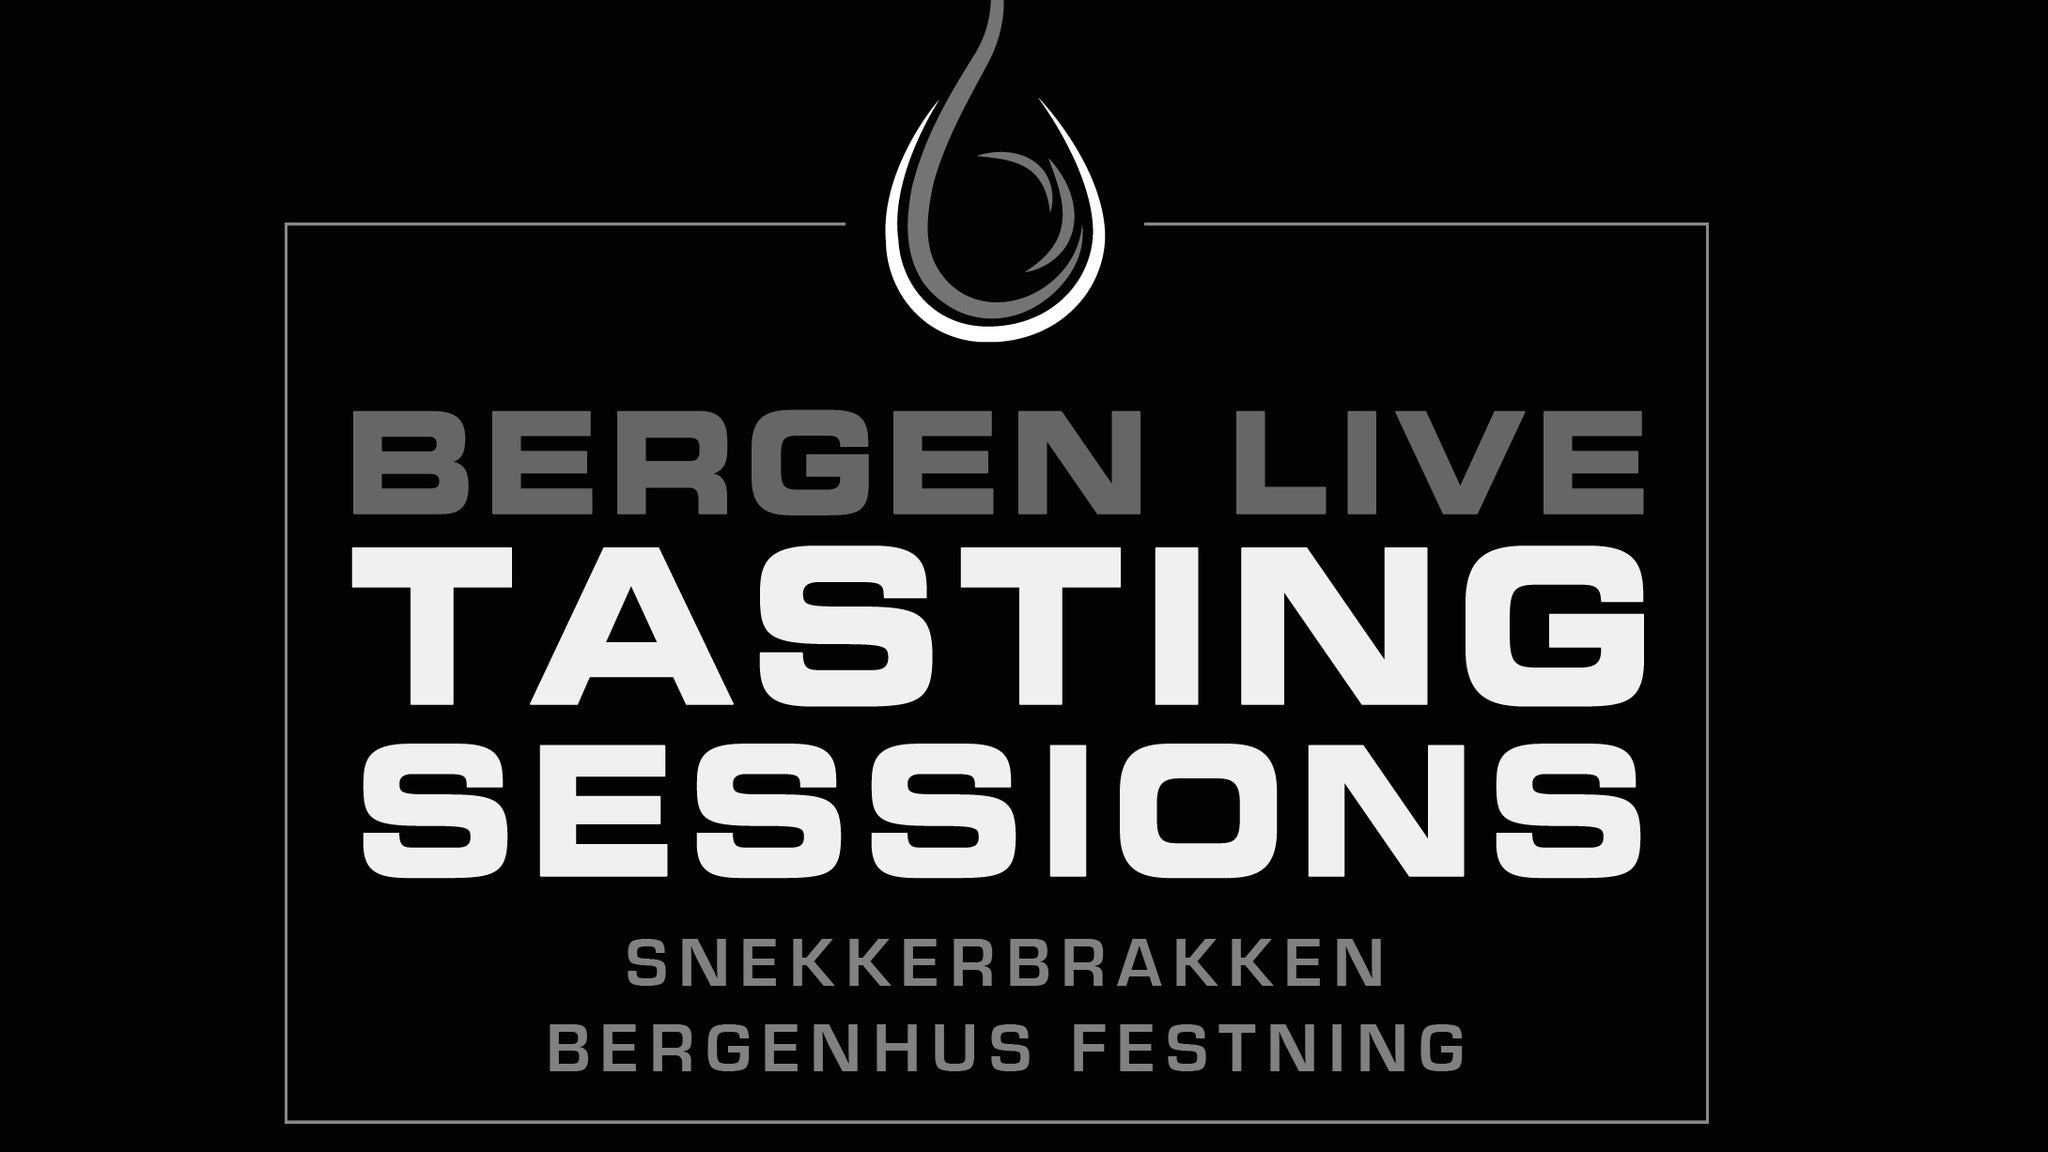 Bergen Live Tasting Sessions presale information on freepresalepasswords.com